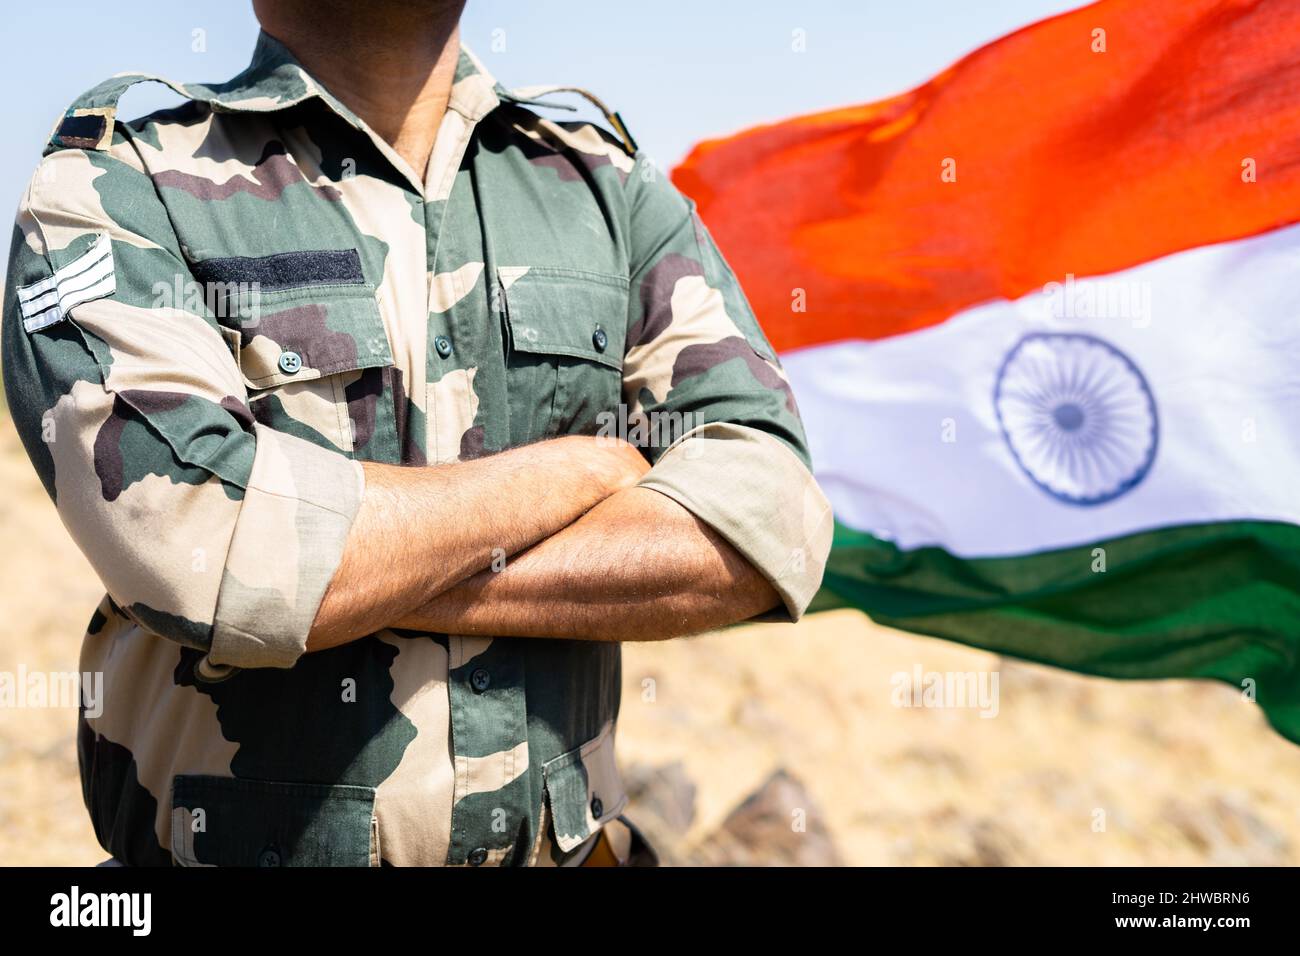 Soldat indien debout avec les armes croisées devant le drapeau indien - concept de soldat confiant, intrépide et de fierté Banque D'Images